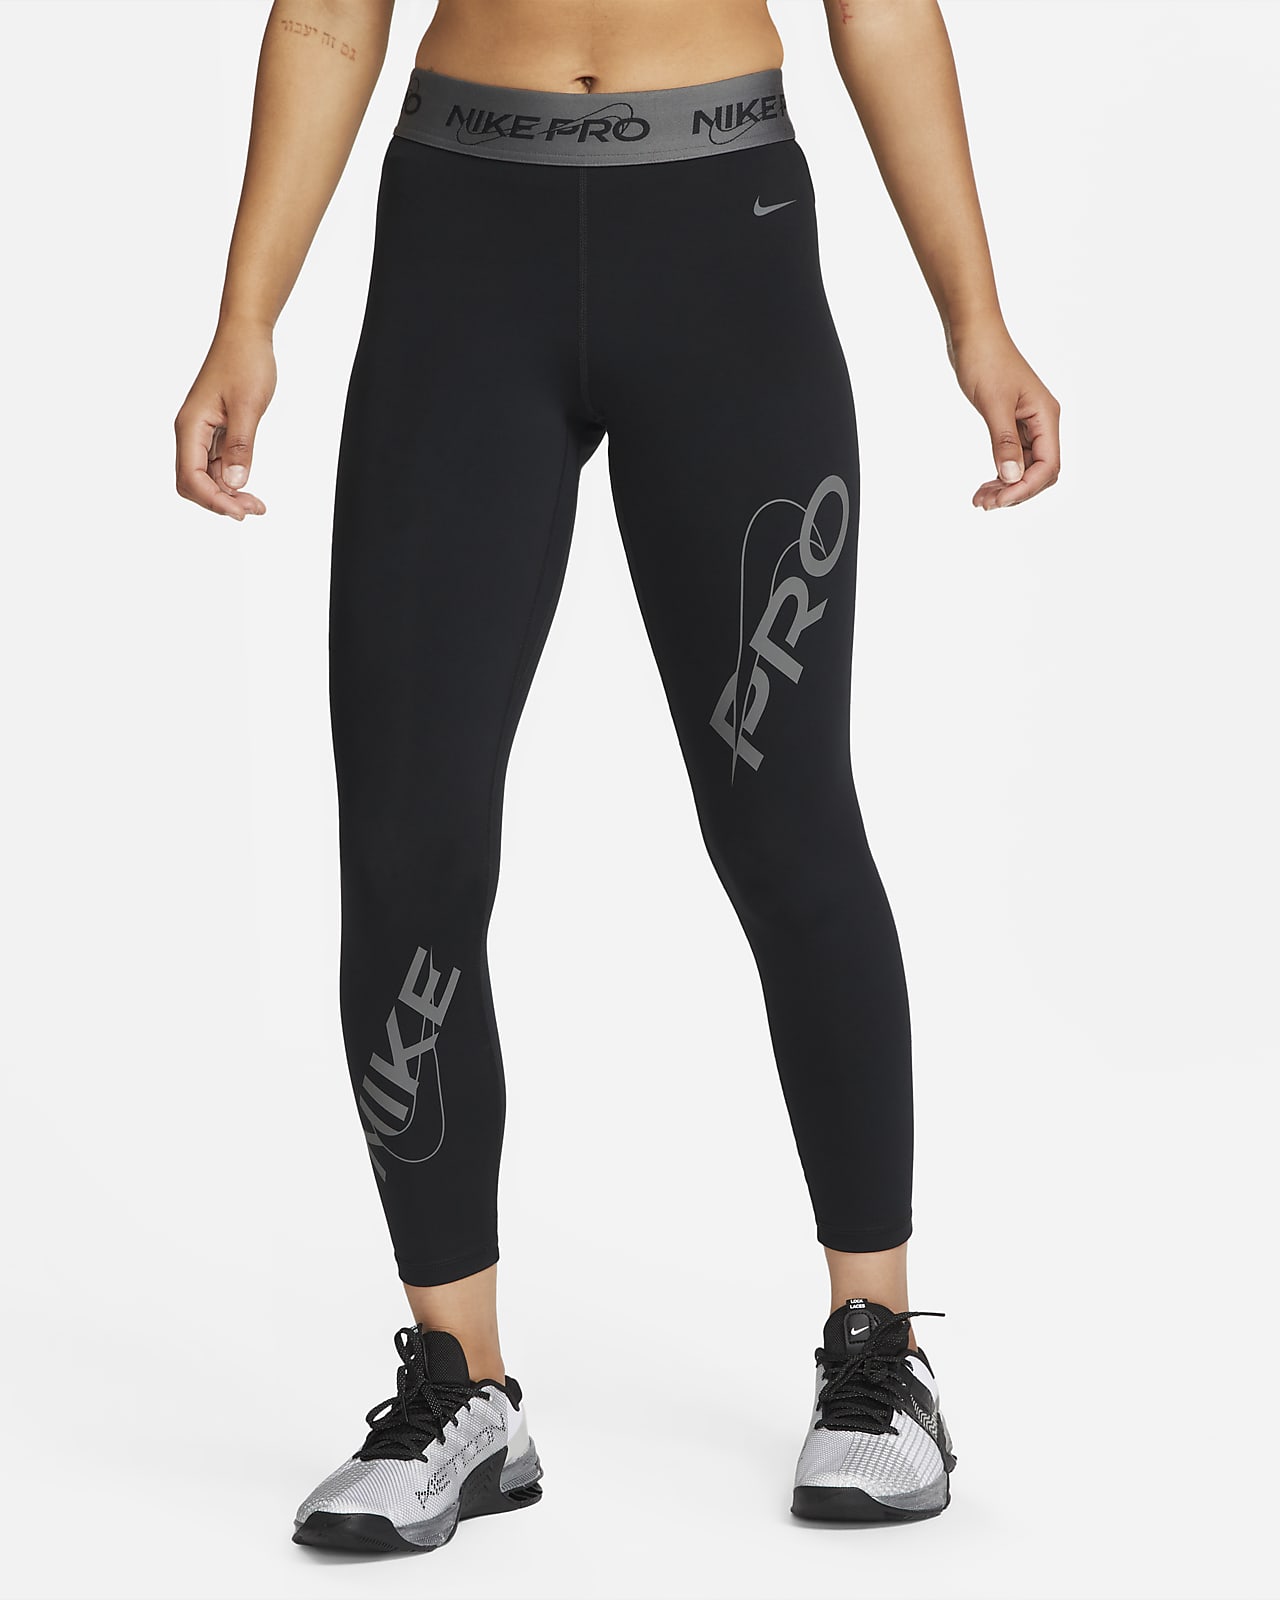 Legginsy Damskie Nike Pro Fitness Spodnie Sport Xs - Ceny i opinie